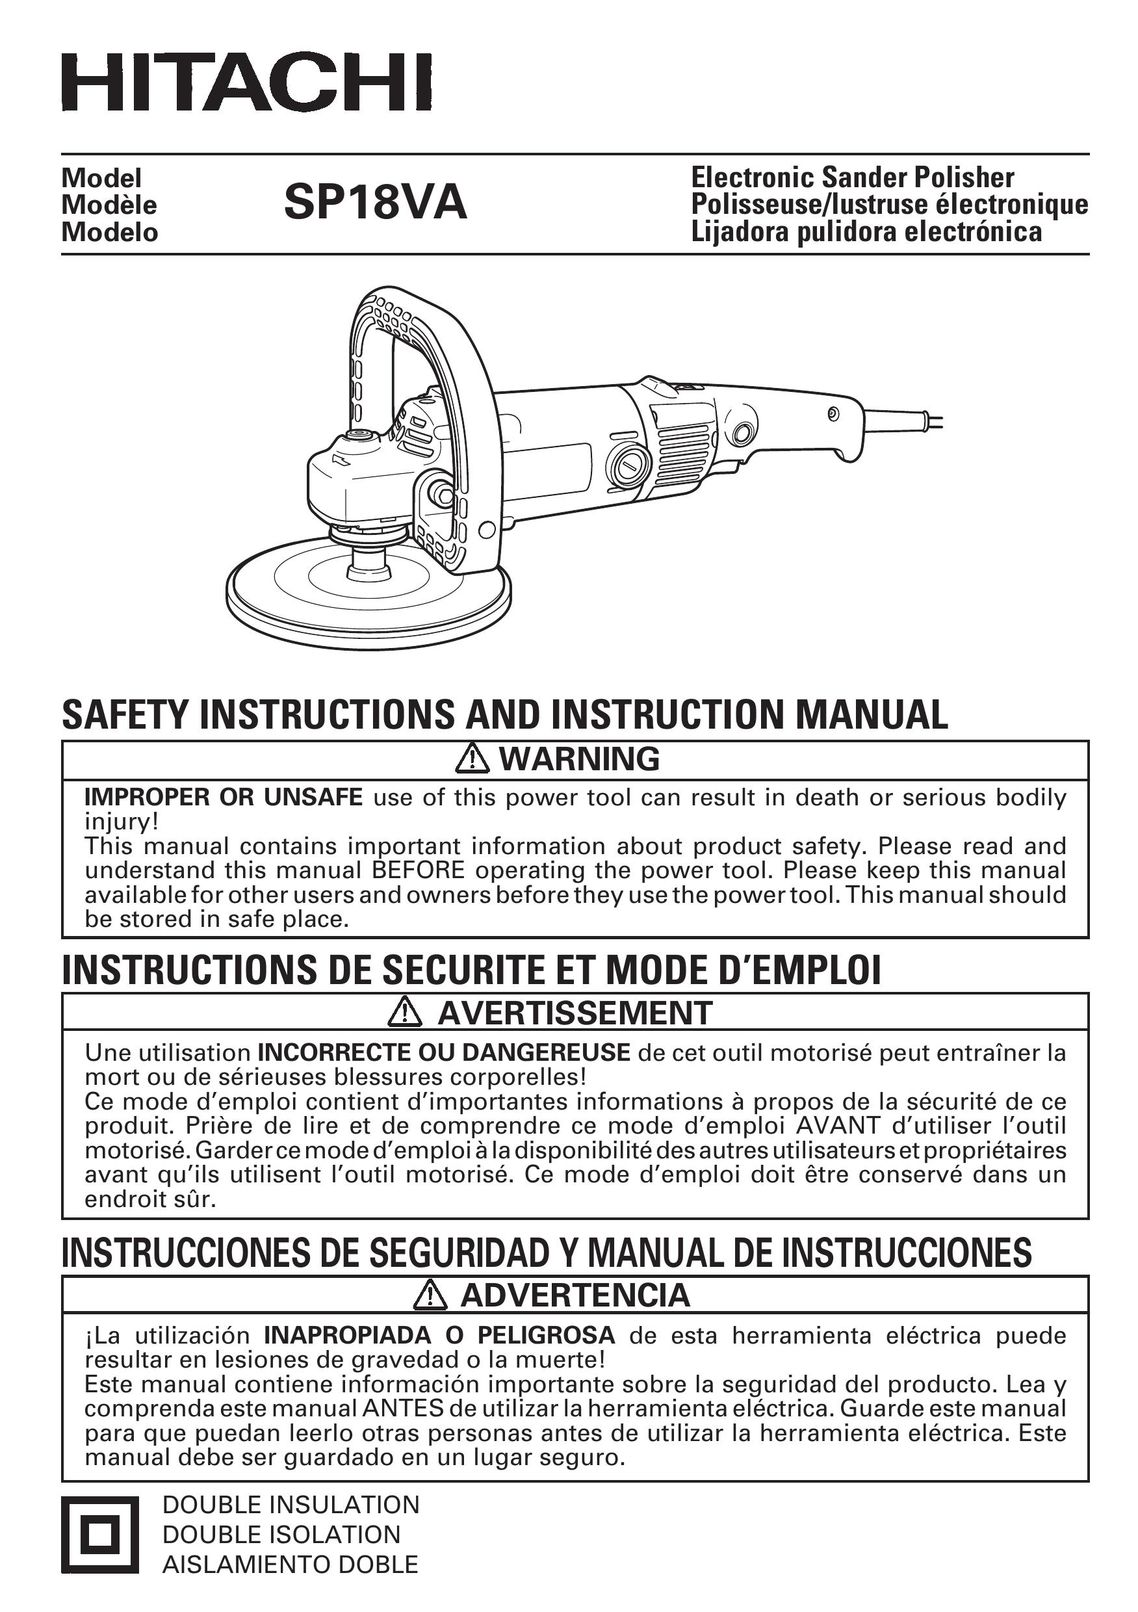 Hitachi SP18VA Sander User Manual